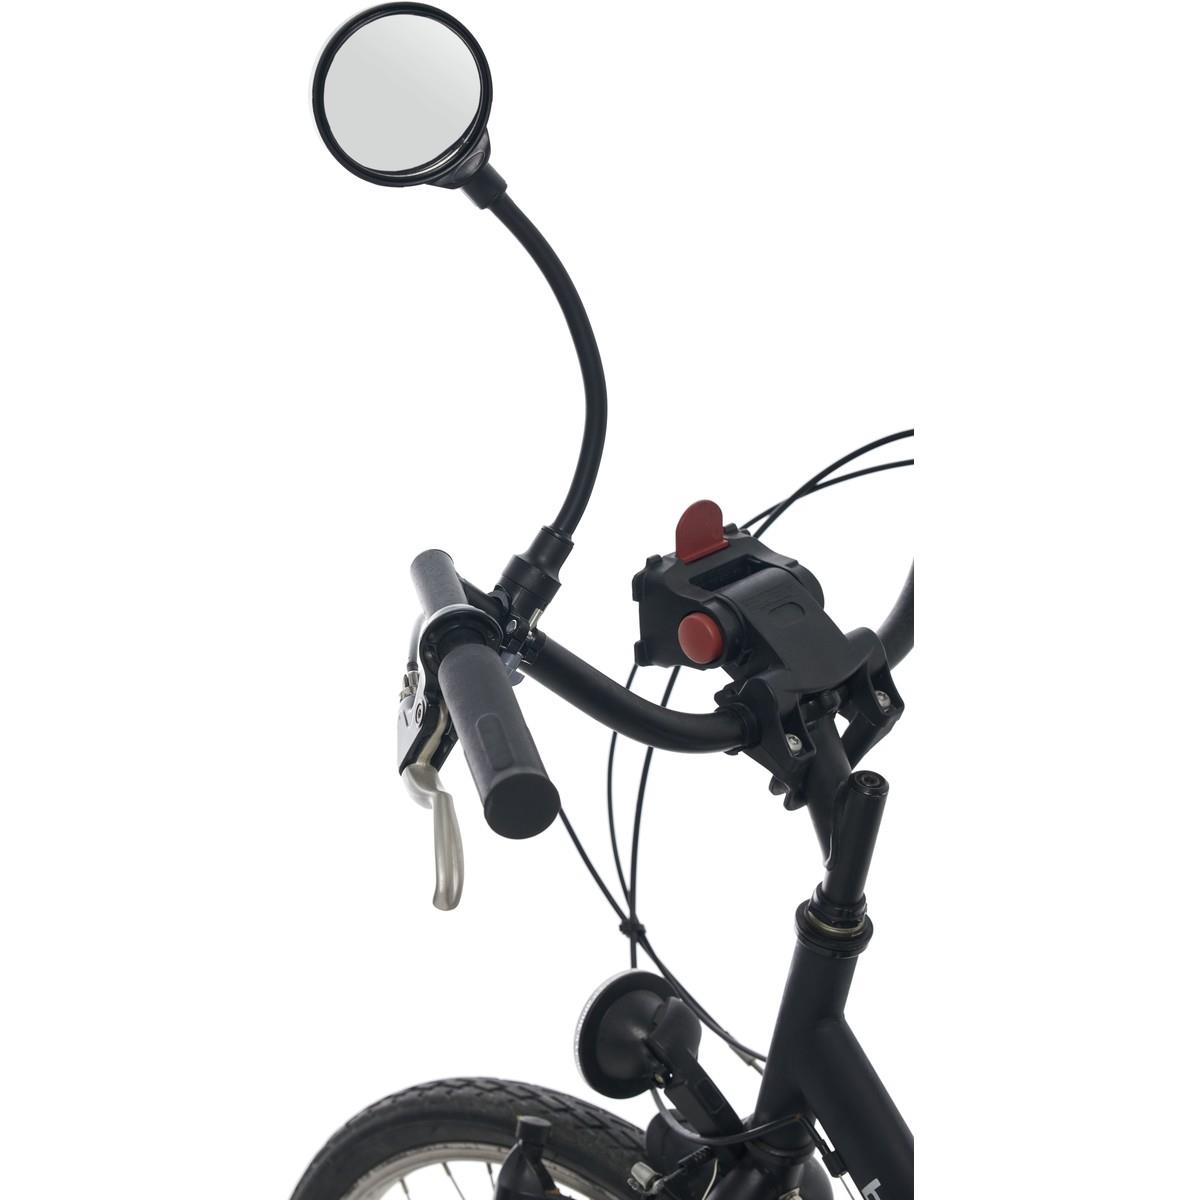 Rückspiegel für Fahrräder und E-Scooter